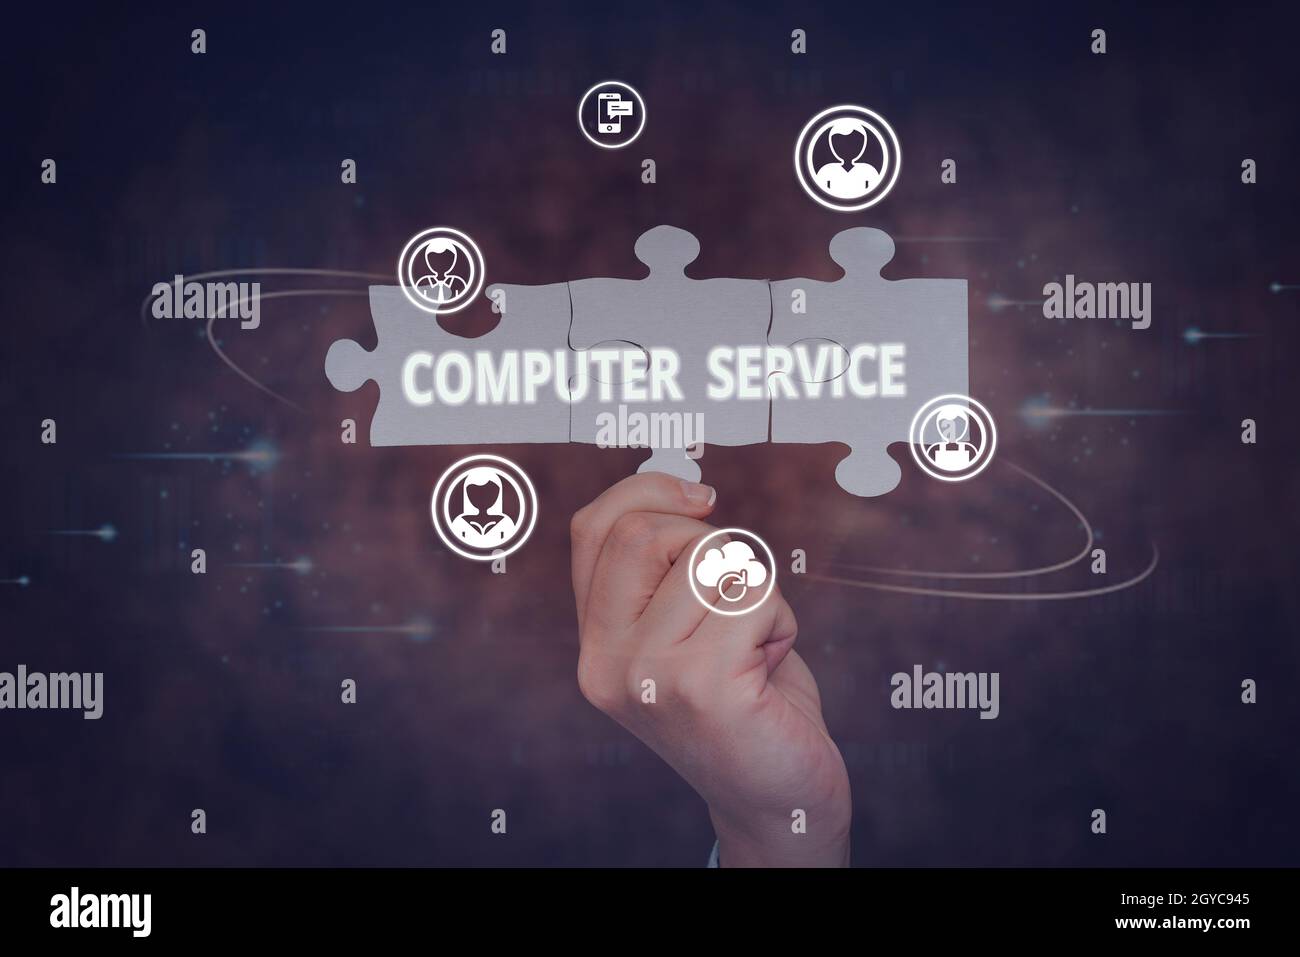 Konzeptionelle Anzeige Computer-Service, Internet-Konzept Computer Zeit oder Service einschließlich Datenverarbeitung Hand Holding Jigsaw Puzzle Stück Unl Stockfoto